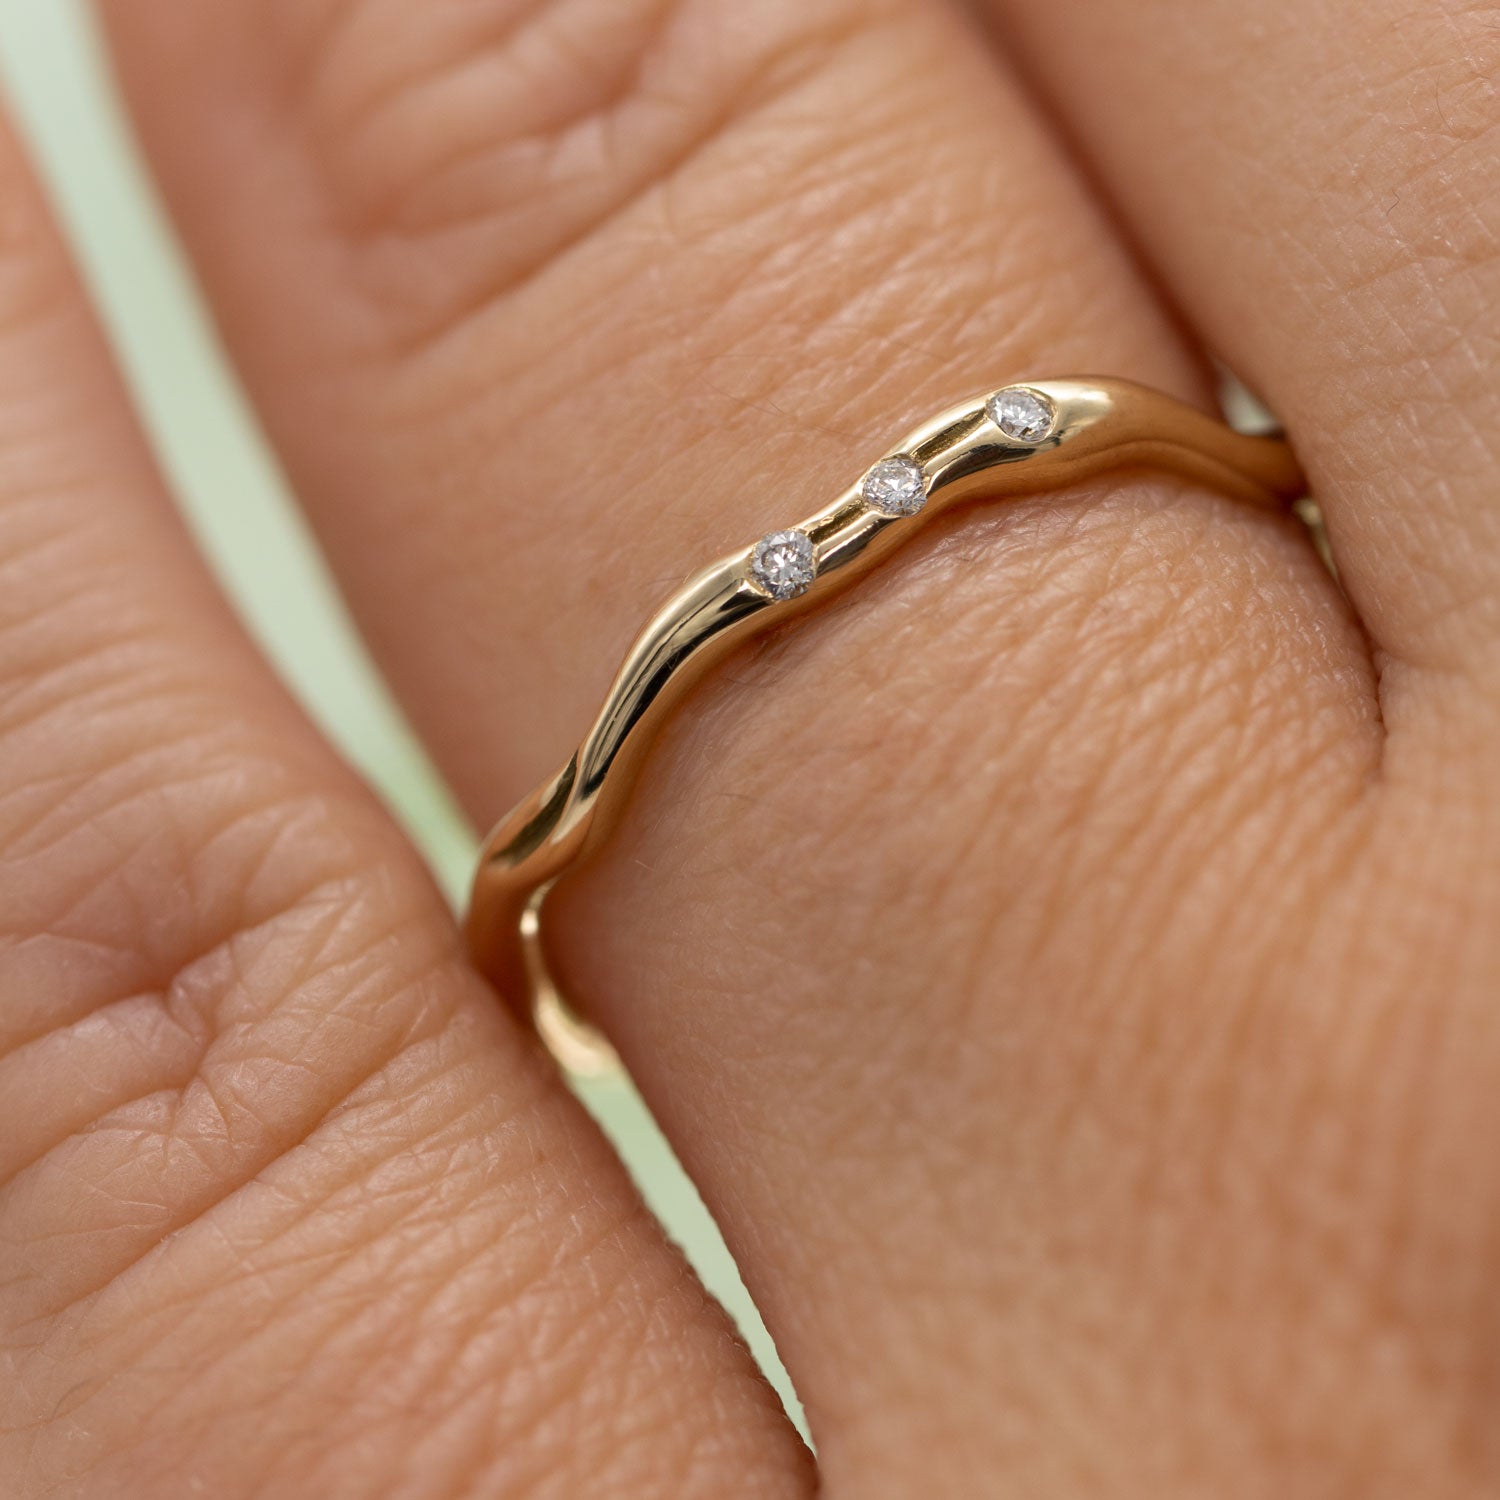 Closeup af udsnit af hånd med ring i guld centreret. Ringen har tre fairtrade diamanter og er organisk formgivet. 